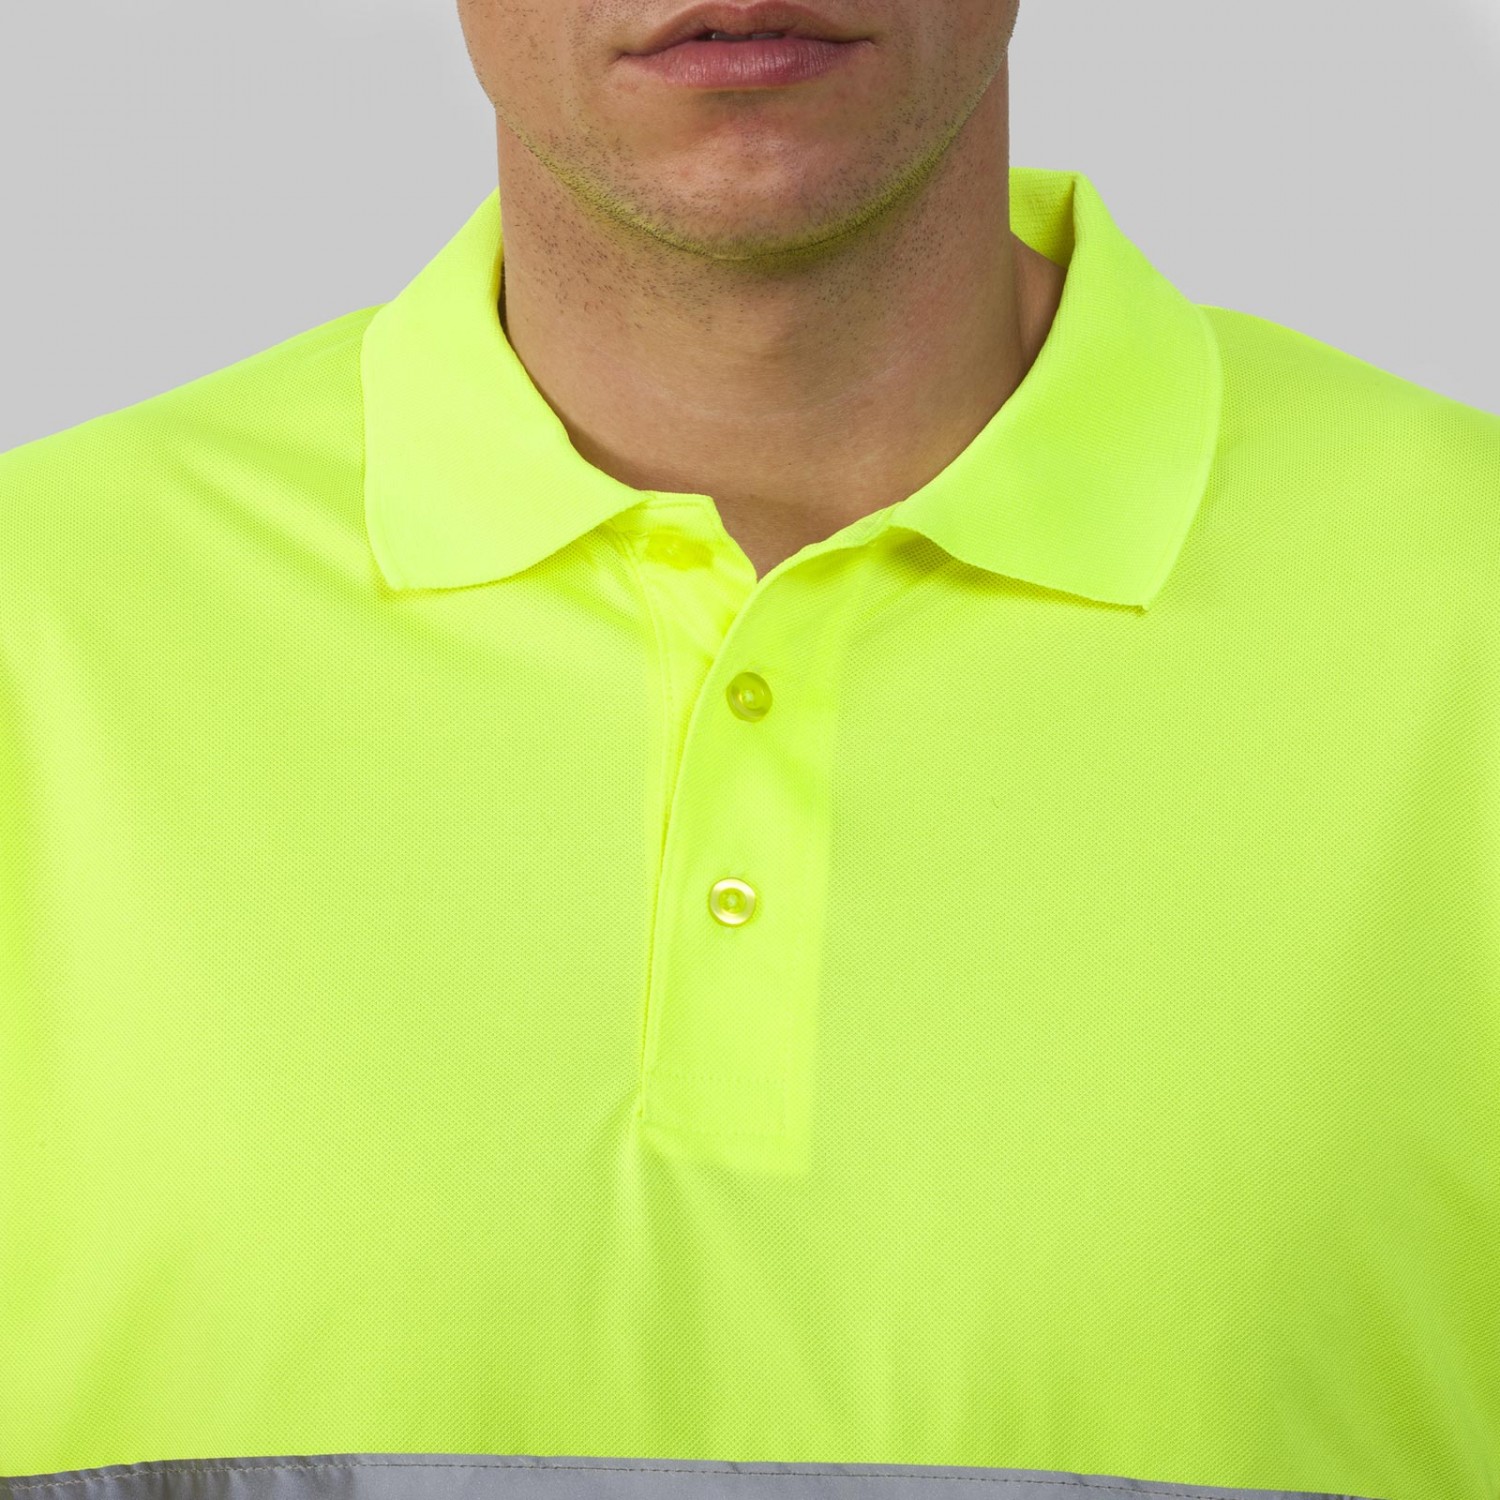 3. Foto Polo Shirt HI VIZ POLARIS leuchtend gelb Reflektorstreifen (Größe: L)